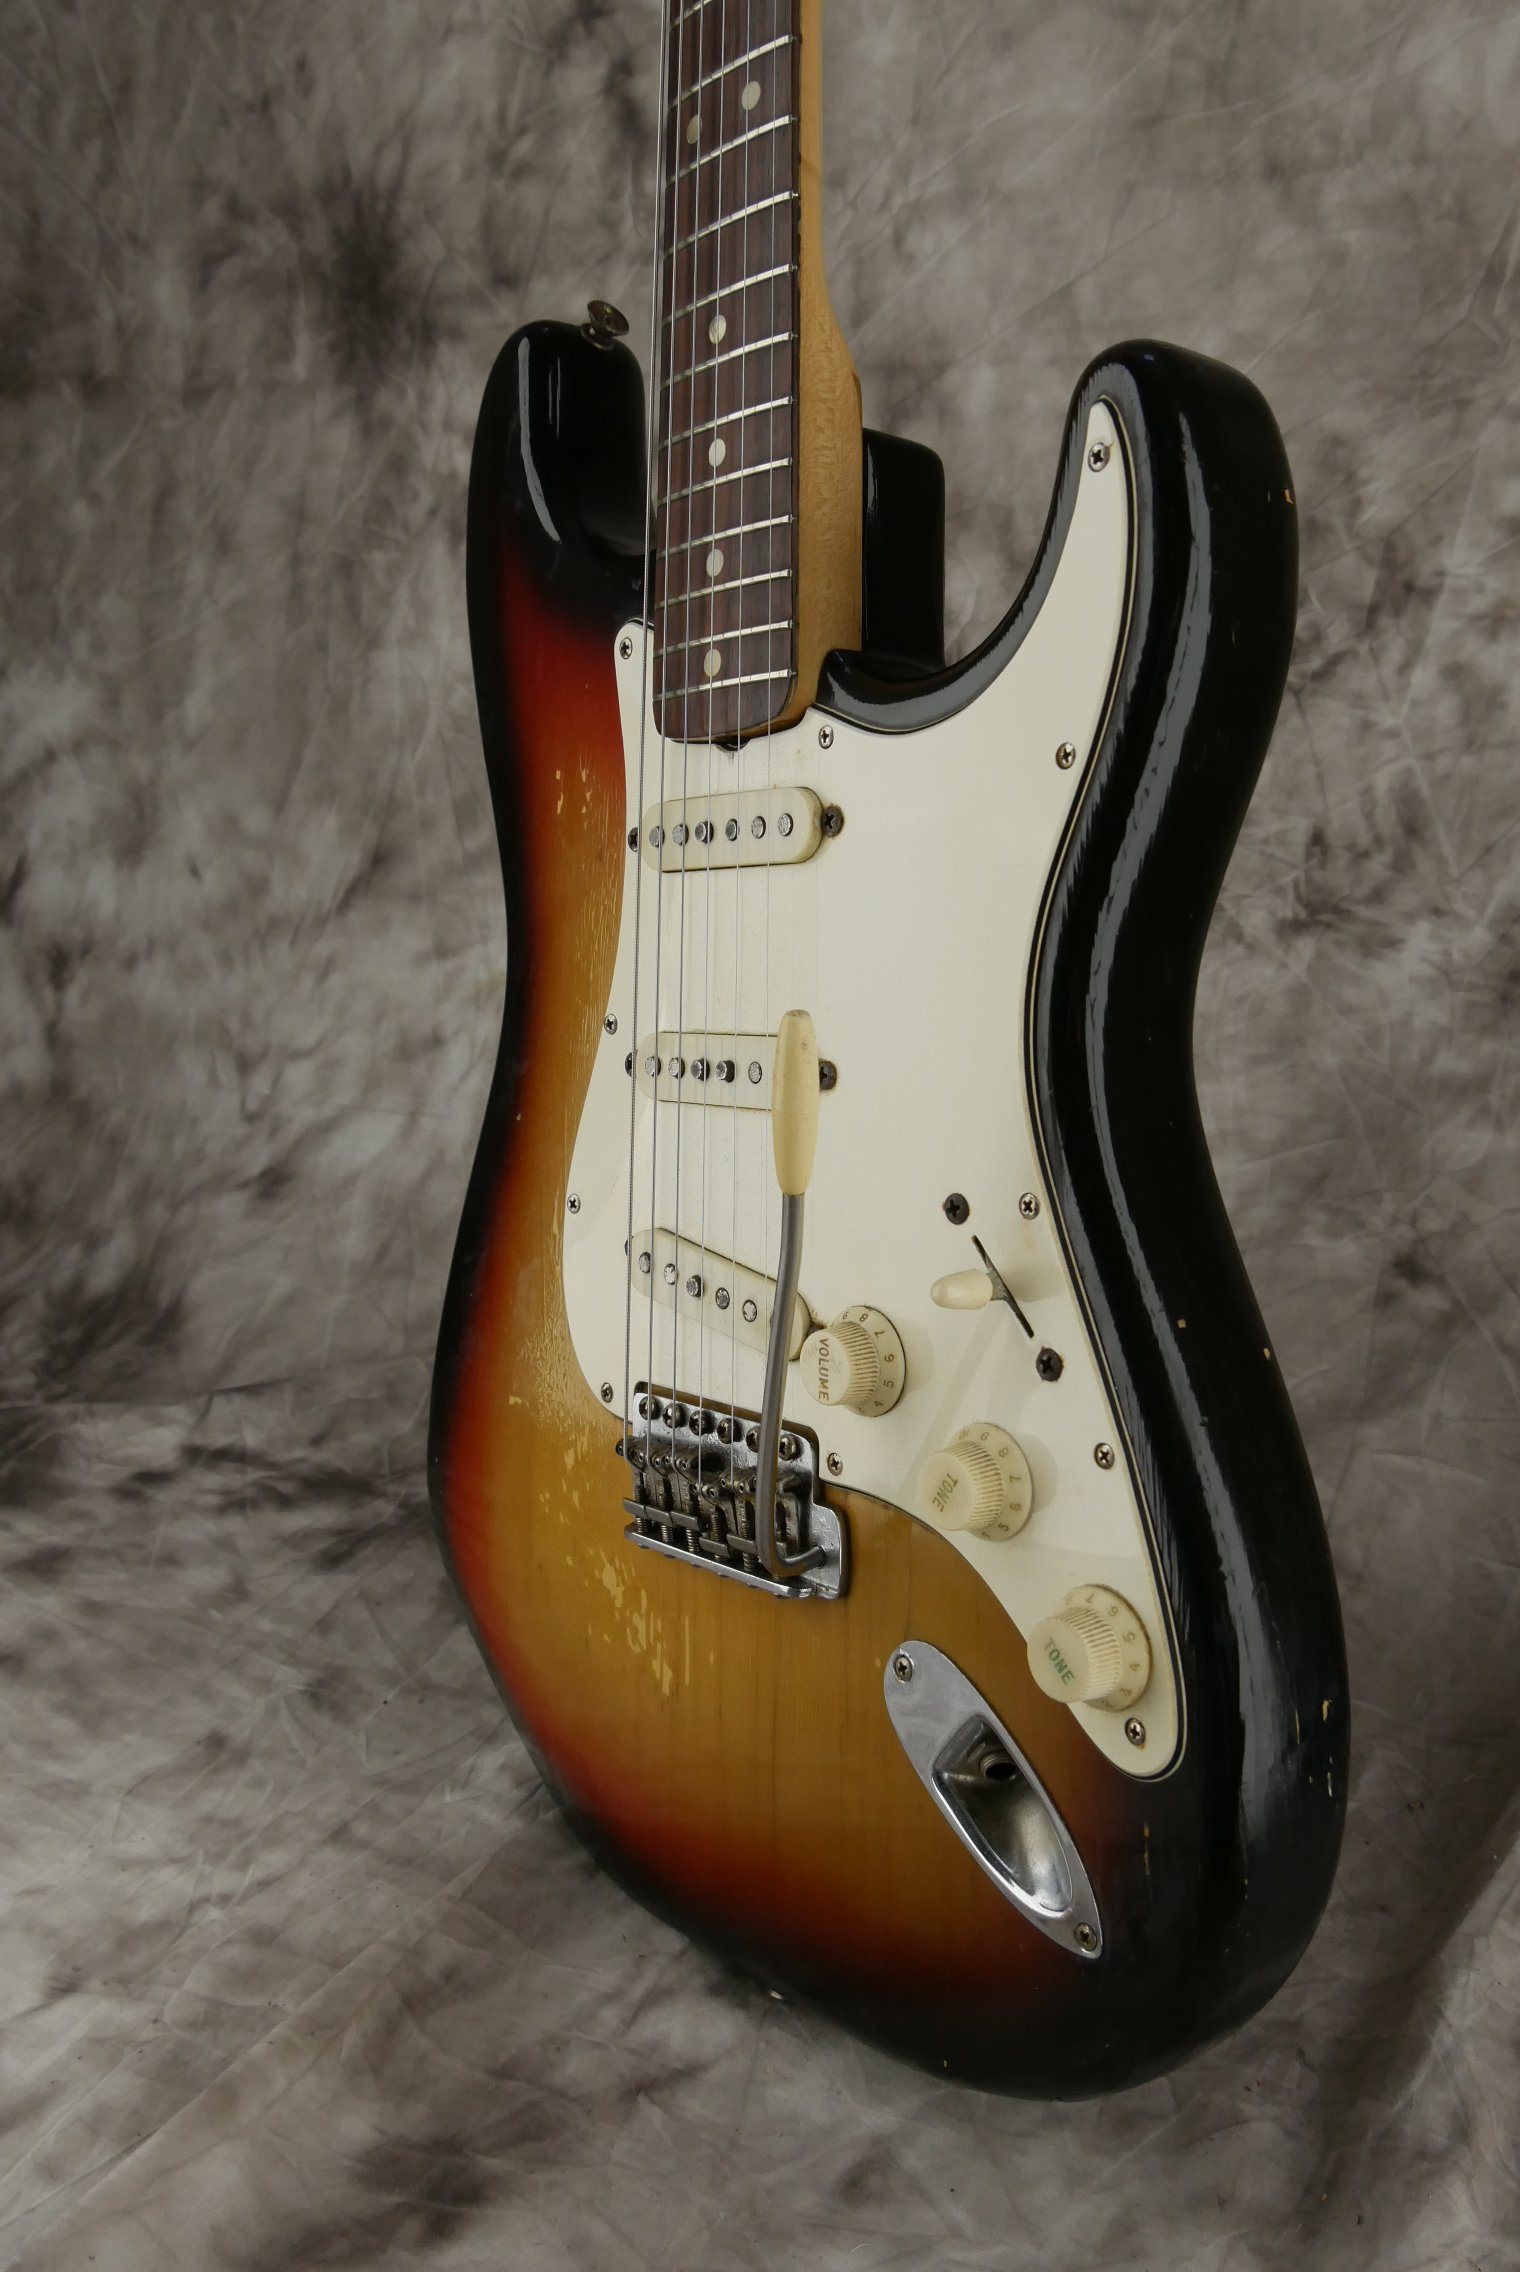 Fender_Stratocaster-1970_sunburst-tremolo-006.JPG